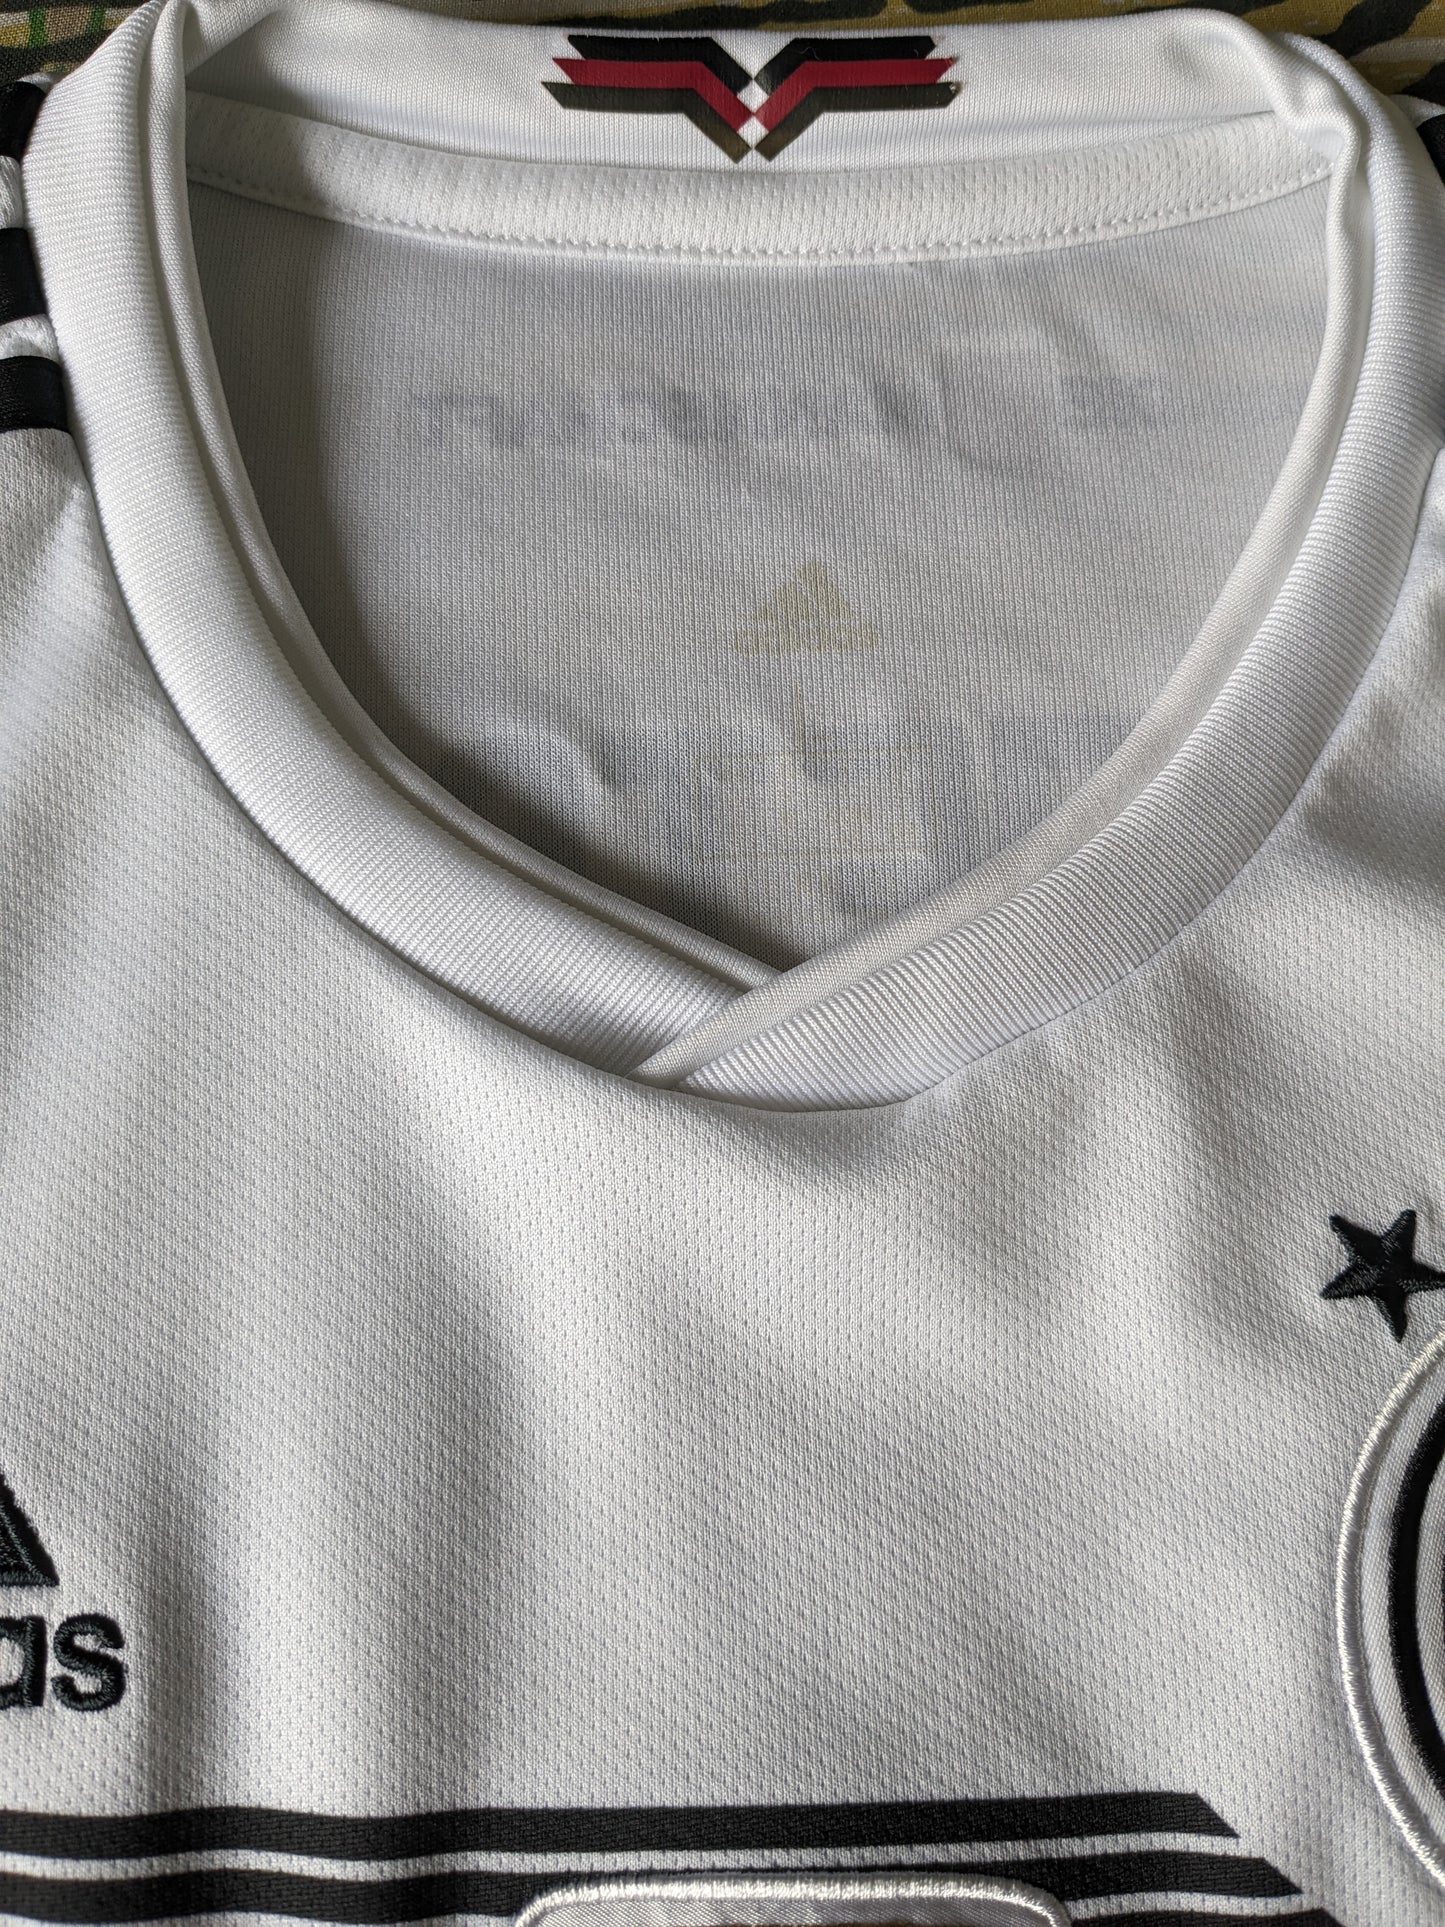 Adidas Deutscher Fussball Bund Bund. Color negro blanco. FIFA 2014. Tamaño M.